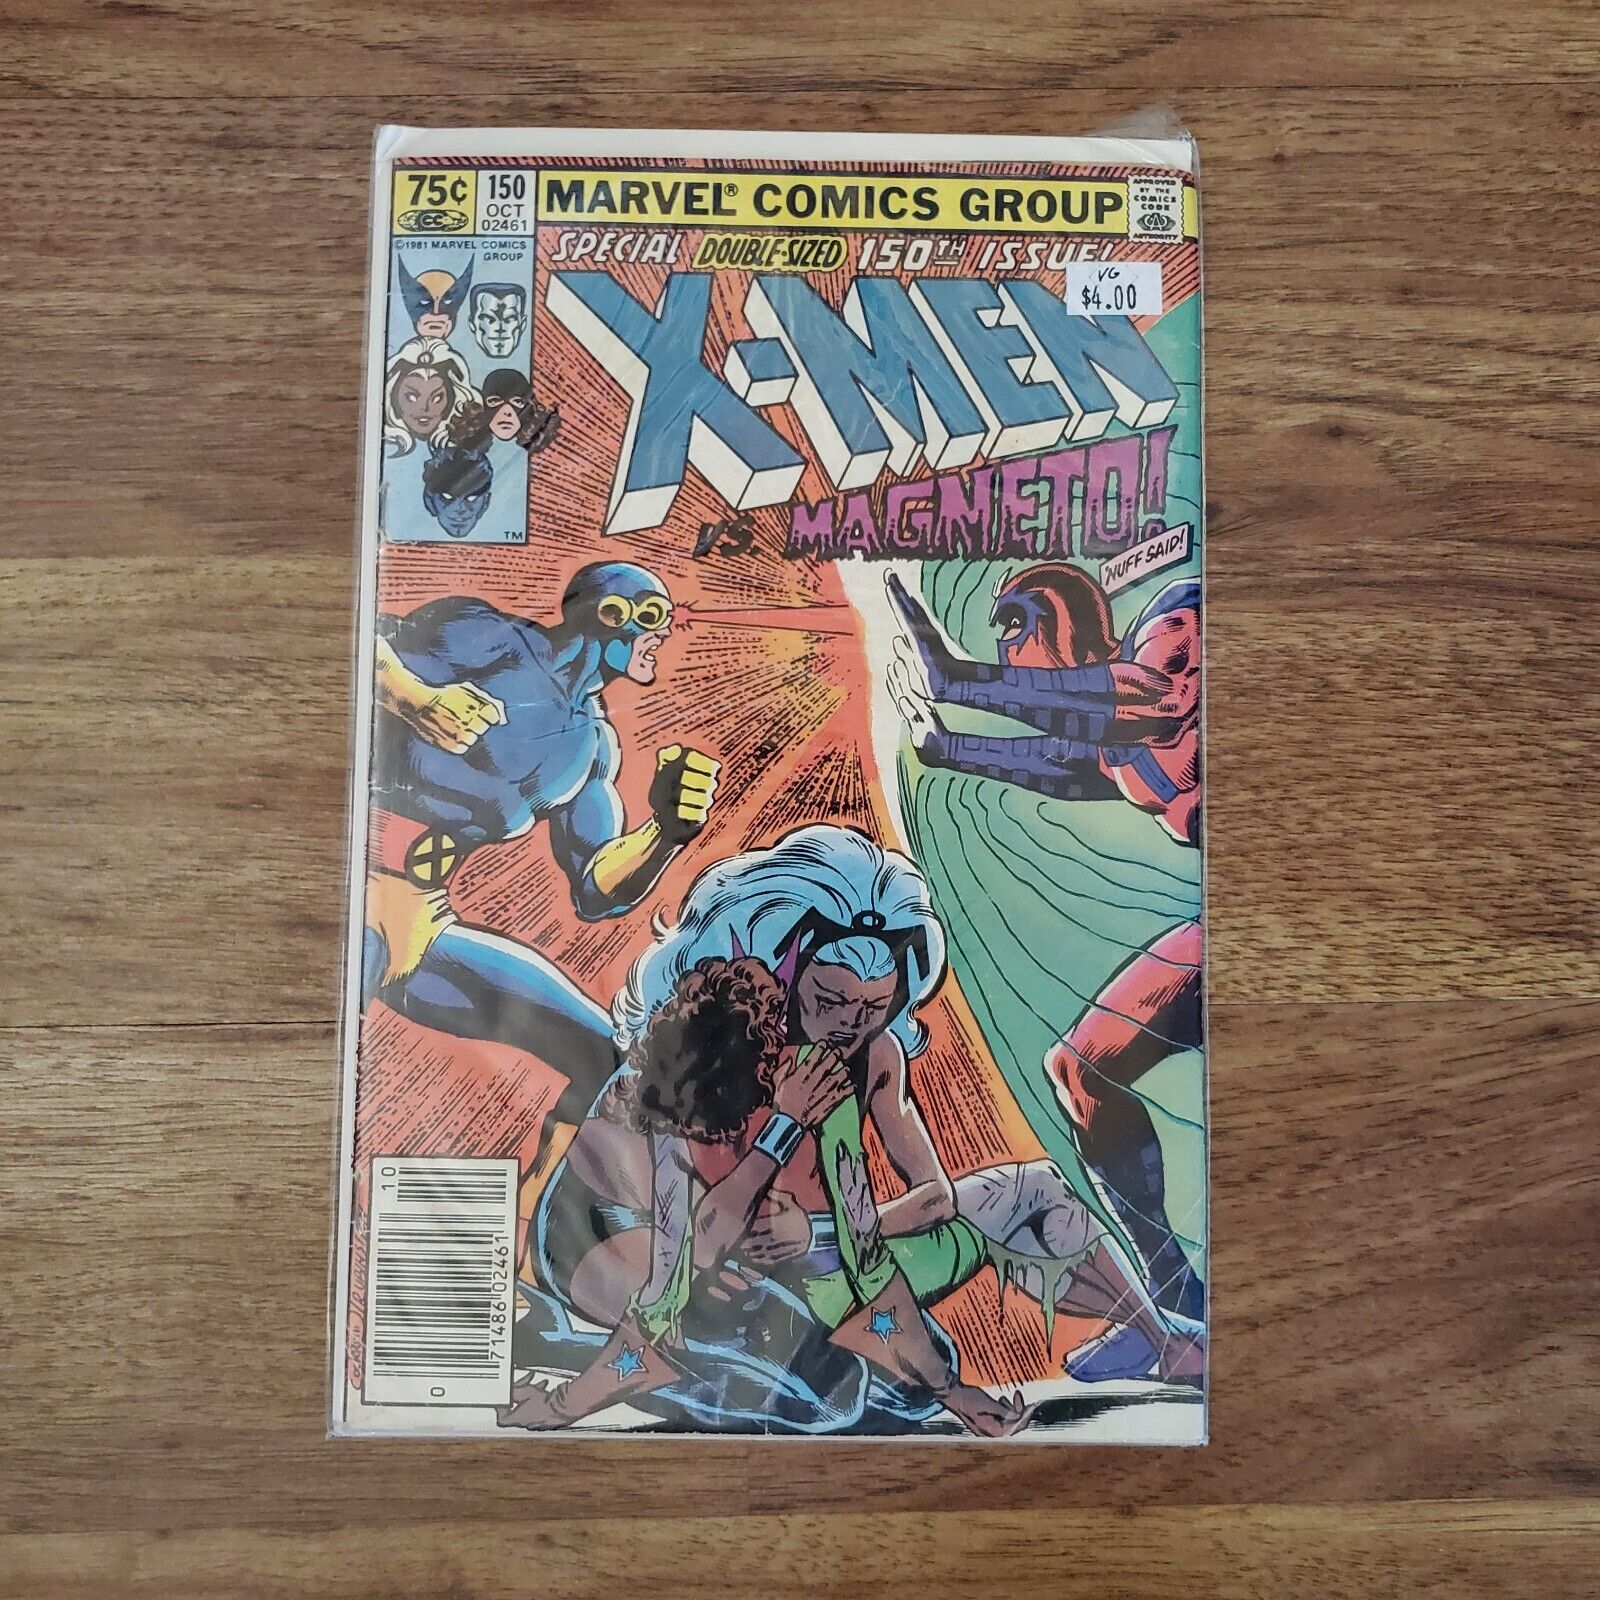 The Uncanny X-Men #150 (Marvel Comics October 1981)